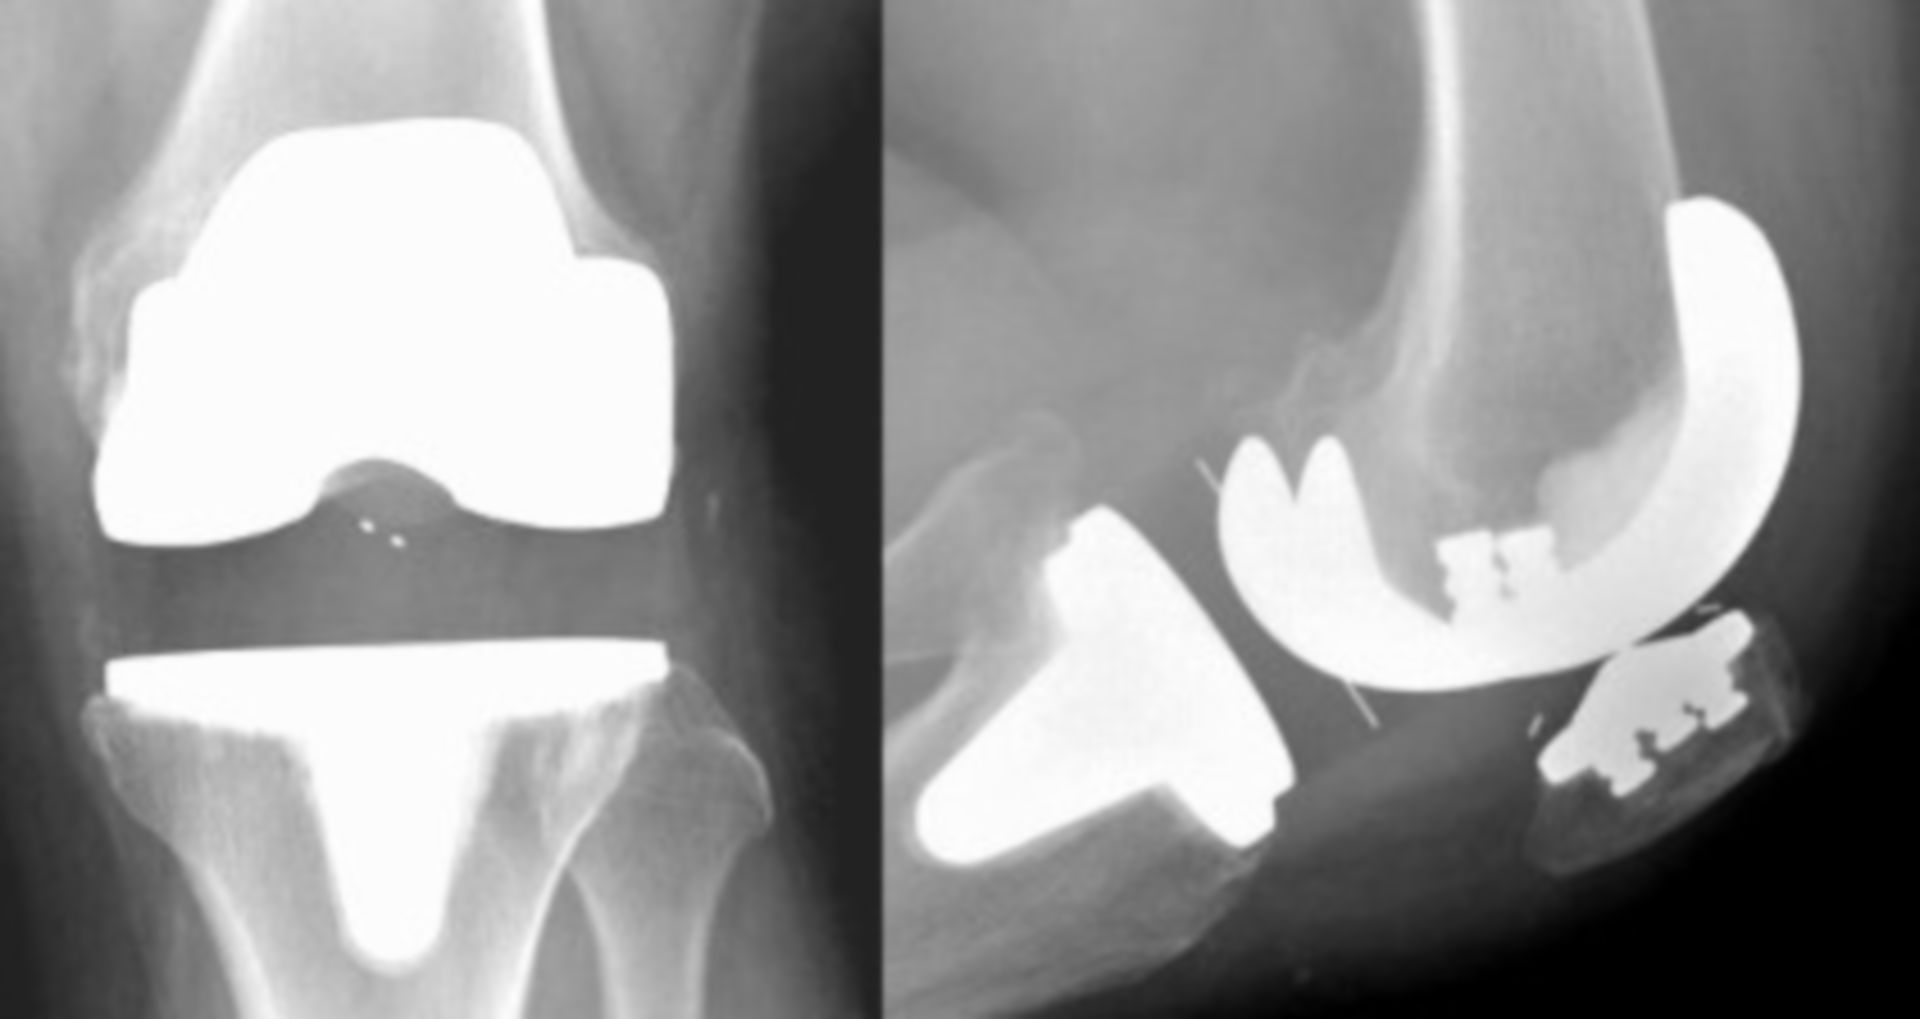 Röntgenbild einer Knie-Totalendoprothese